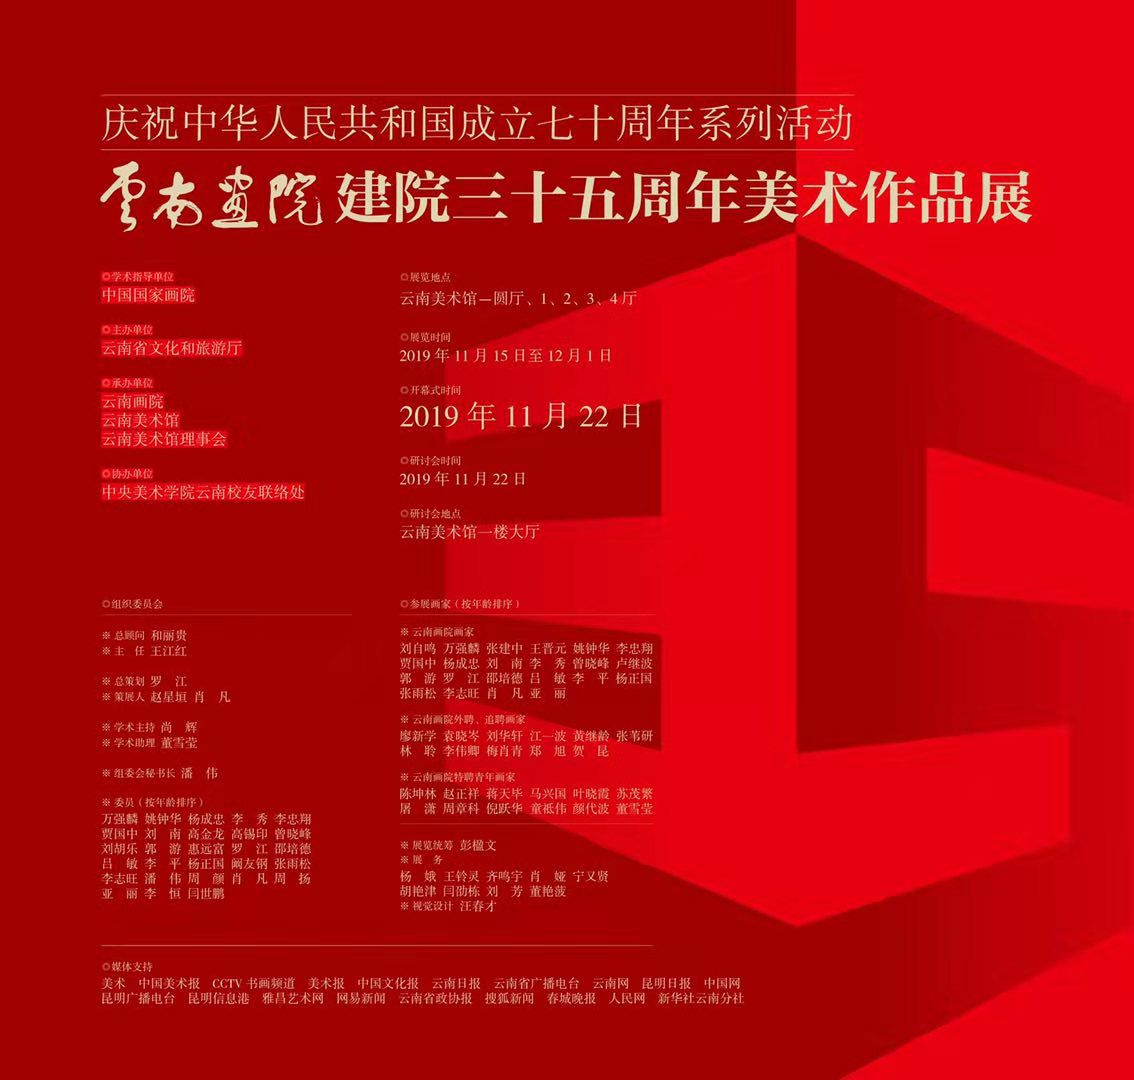 庆祝中华人民共和国成立七十周年系列活动·云南画院建院三十五周年美术作品展